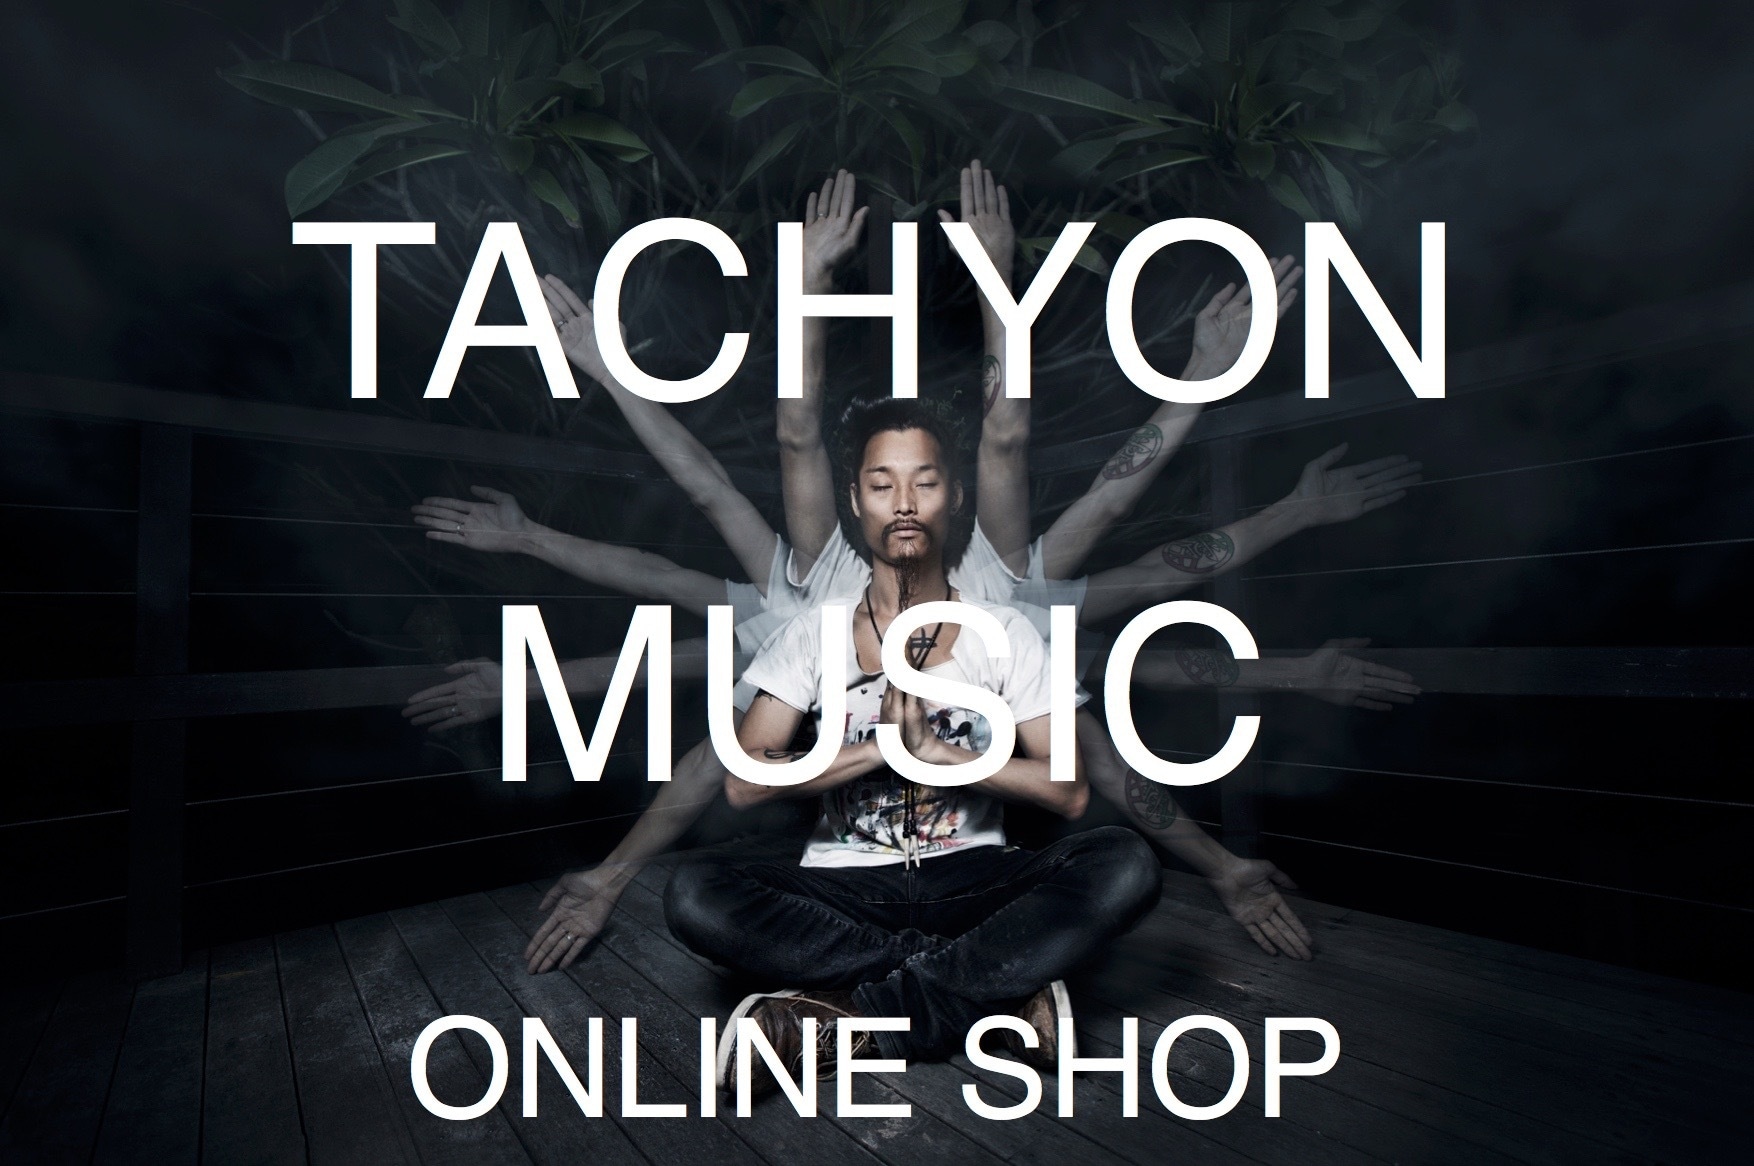 TACHYON MUSIC ONLINE SHOP